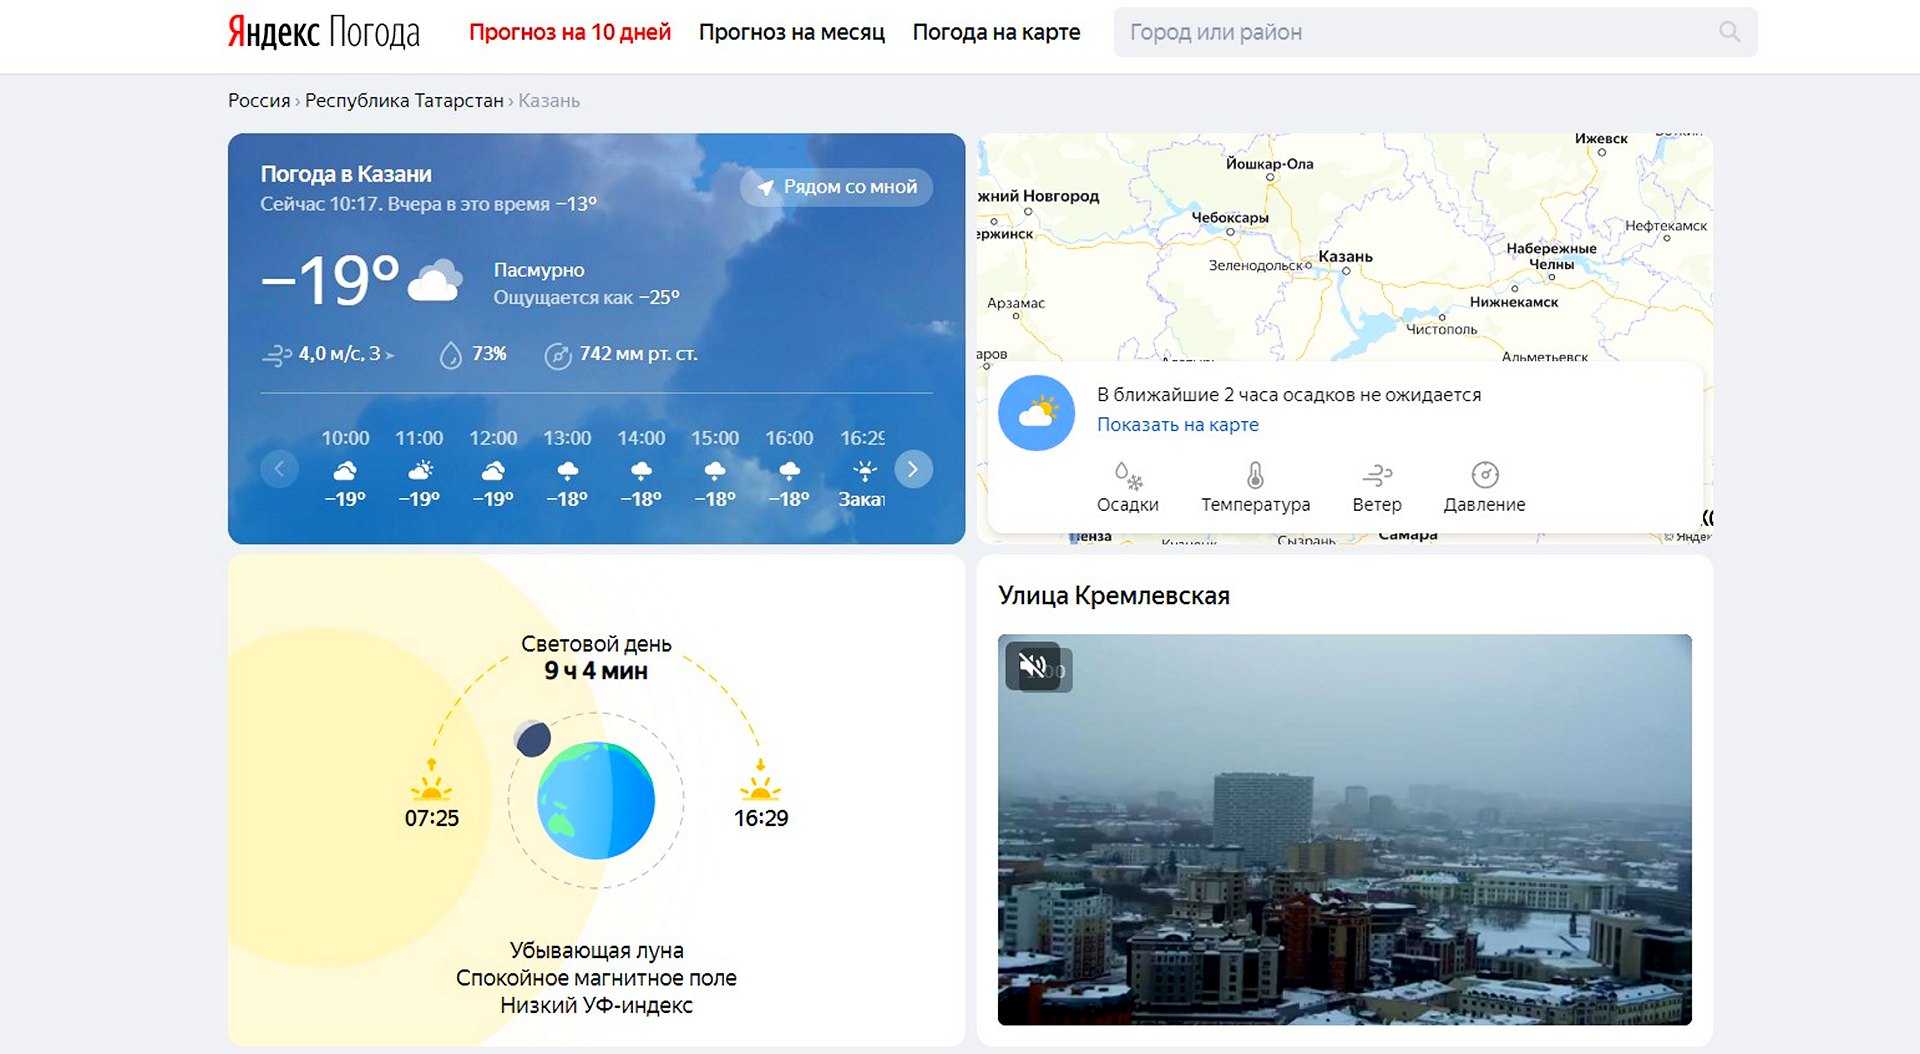 Какой прогноз погоды точнее. Яндекс погода. Прогноз погоды Яндекс. Яндекс погода карта. Яндекс.погода прогноз погоды.